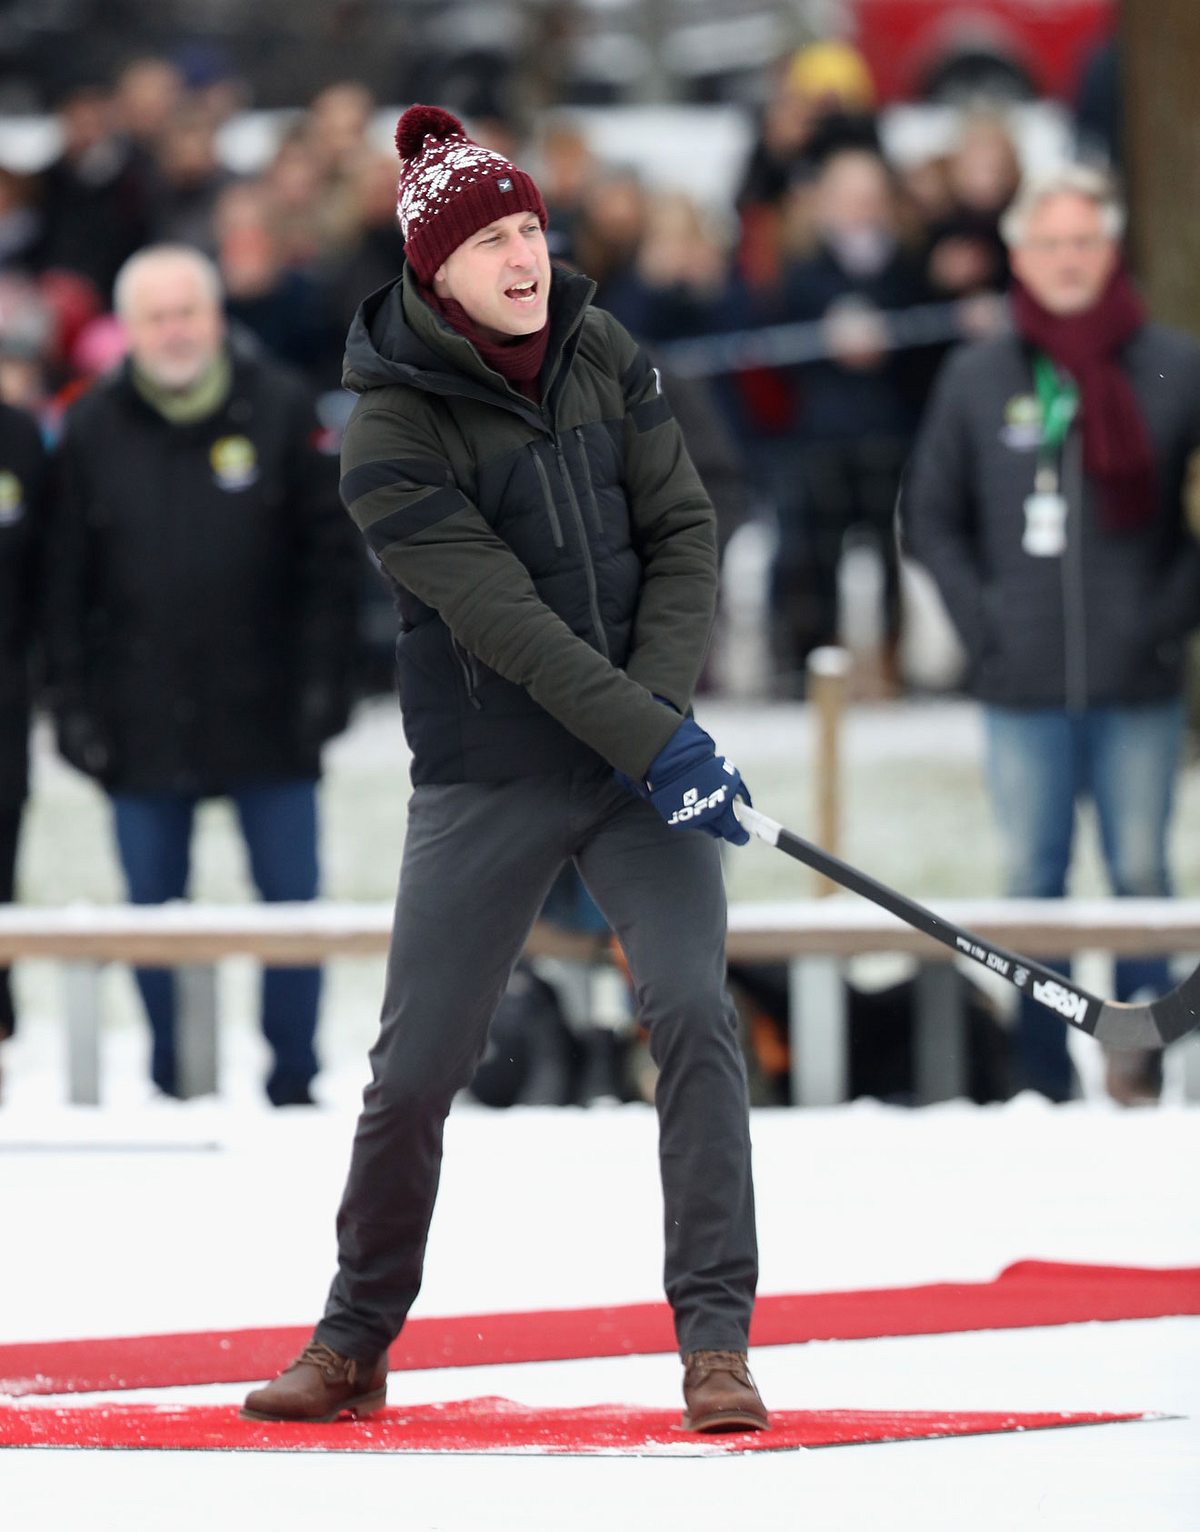 Prinz William beim Eishockey spielen in Schweden.